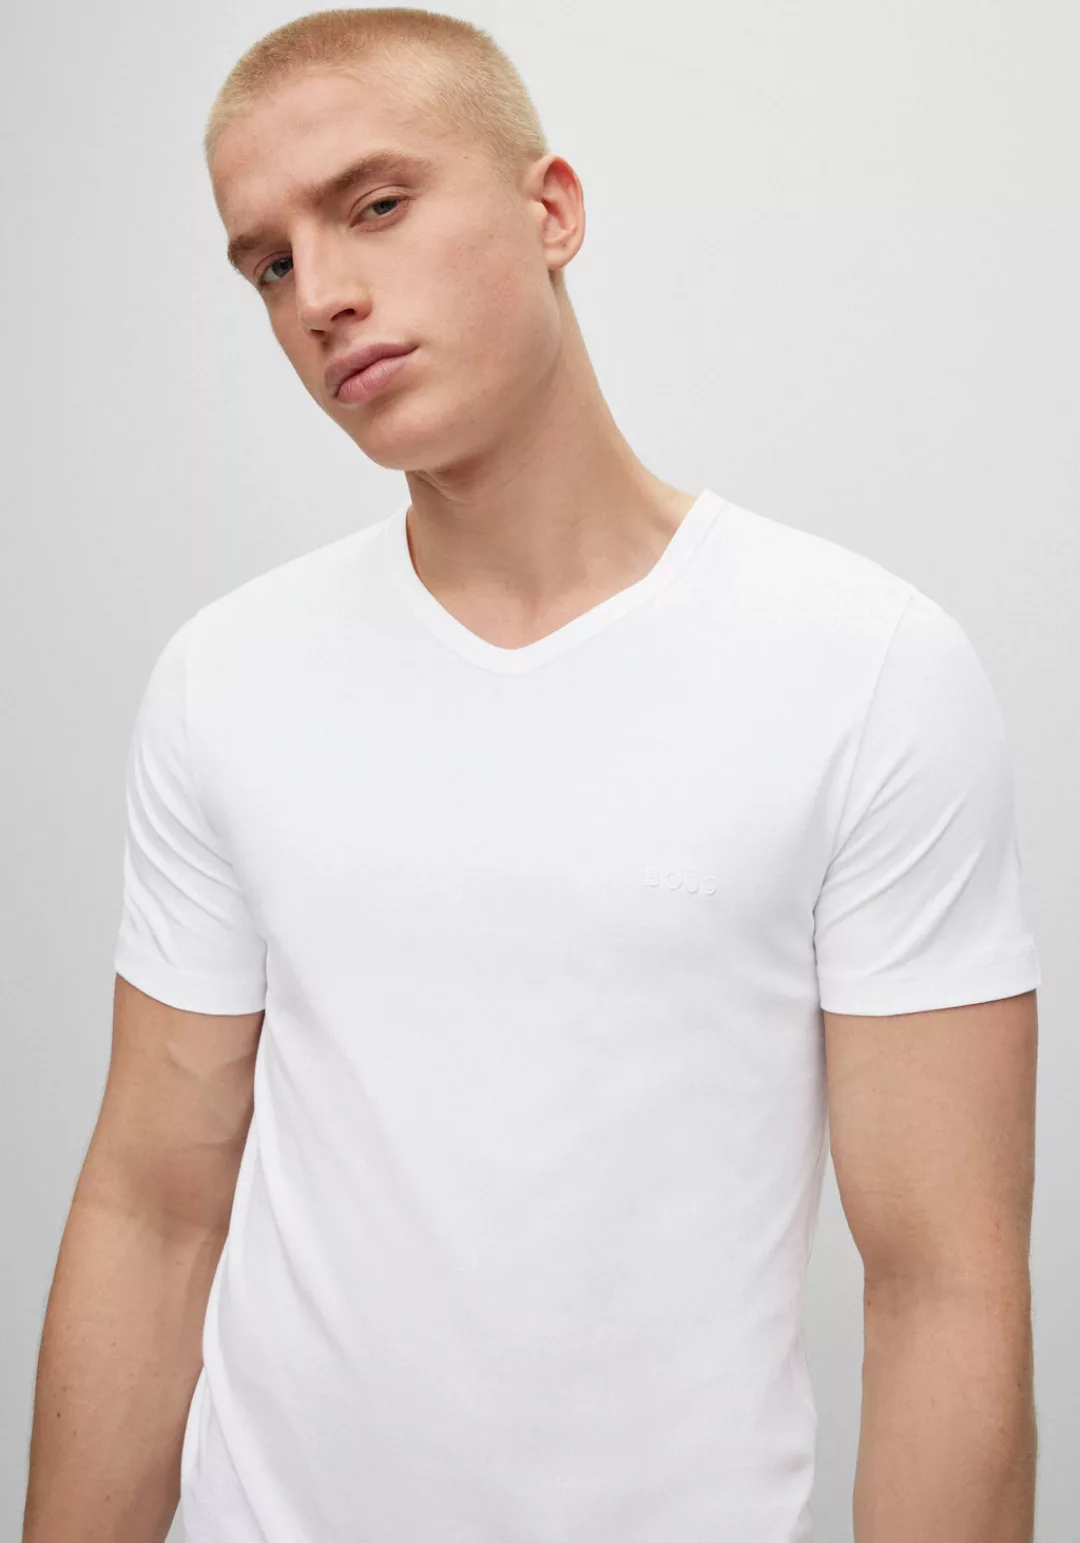 BOSS V-Shirt T-Shirt VN 3P CO (Packung) günstig online kaufen